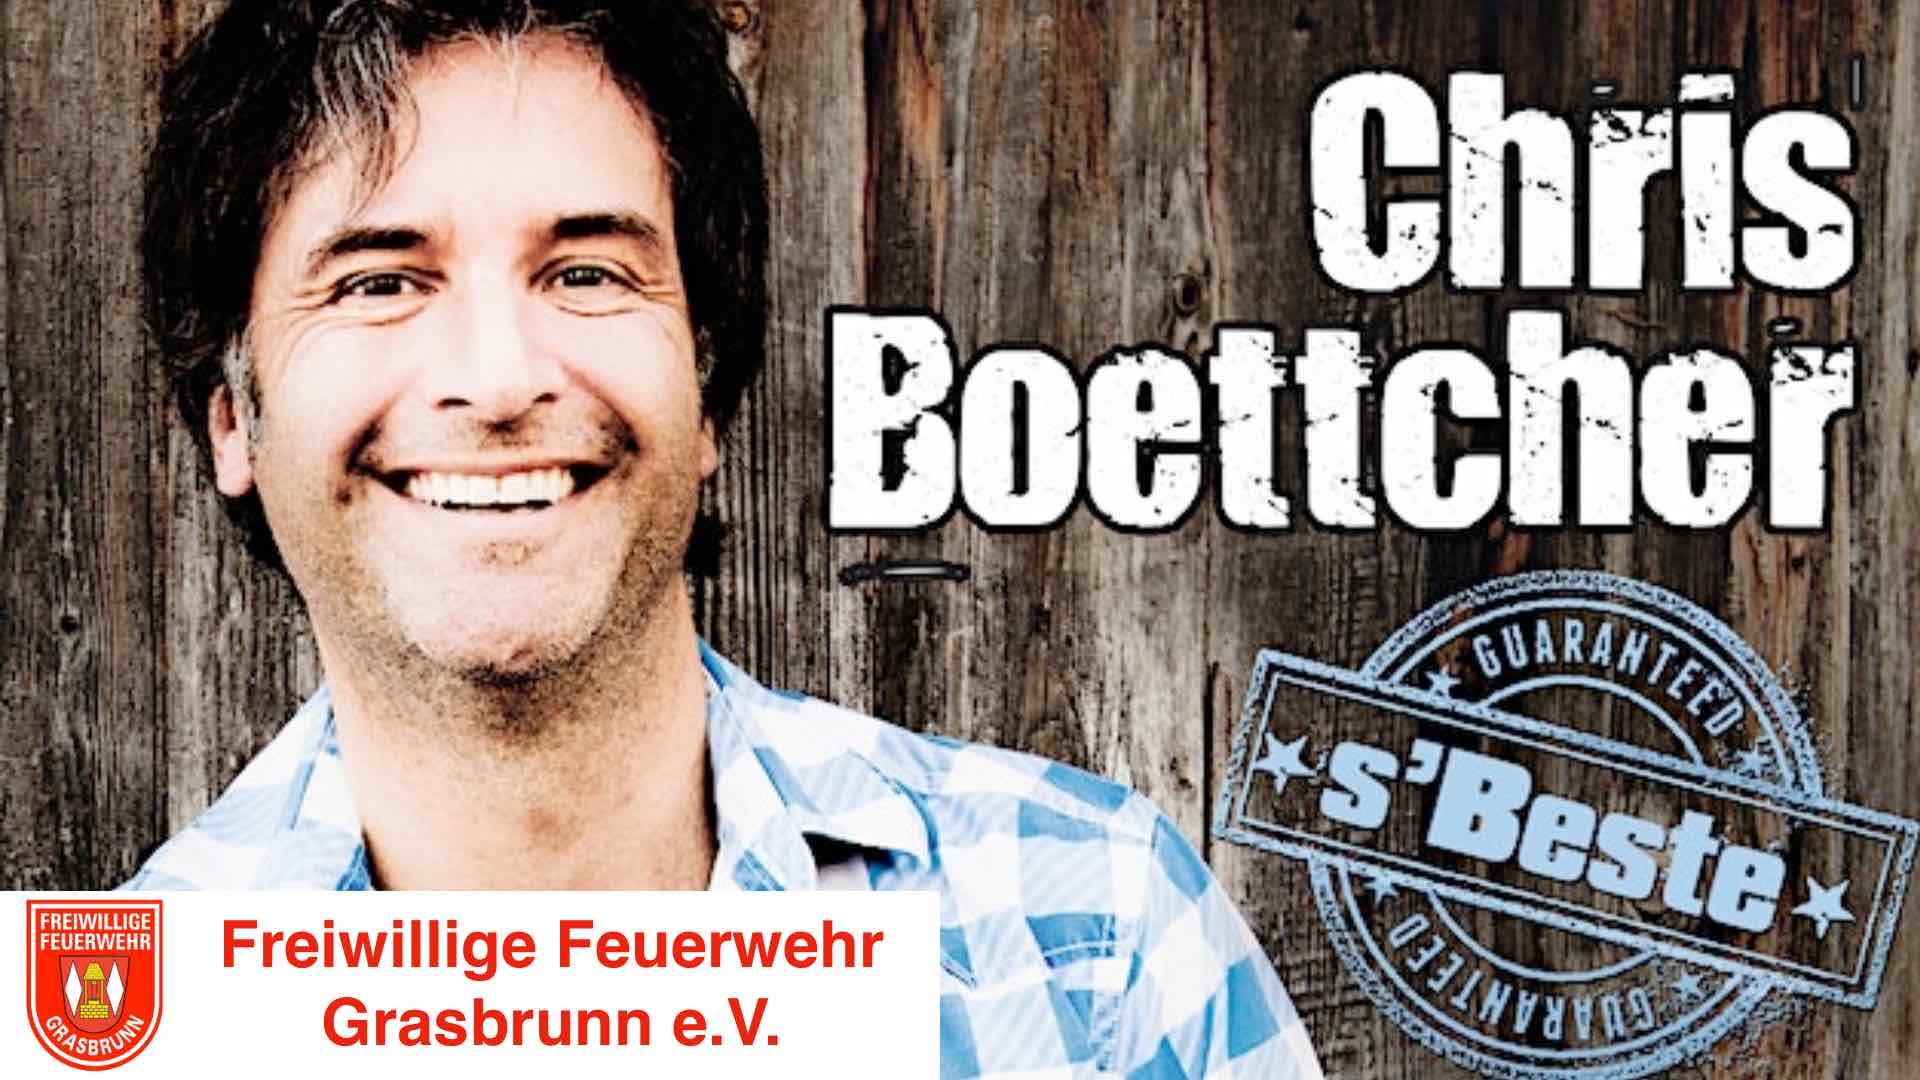 Chris Boettcher: s'Beste (150-Jahr-Feier der Freiwilligen Feuerwehr Grasbrunn)